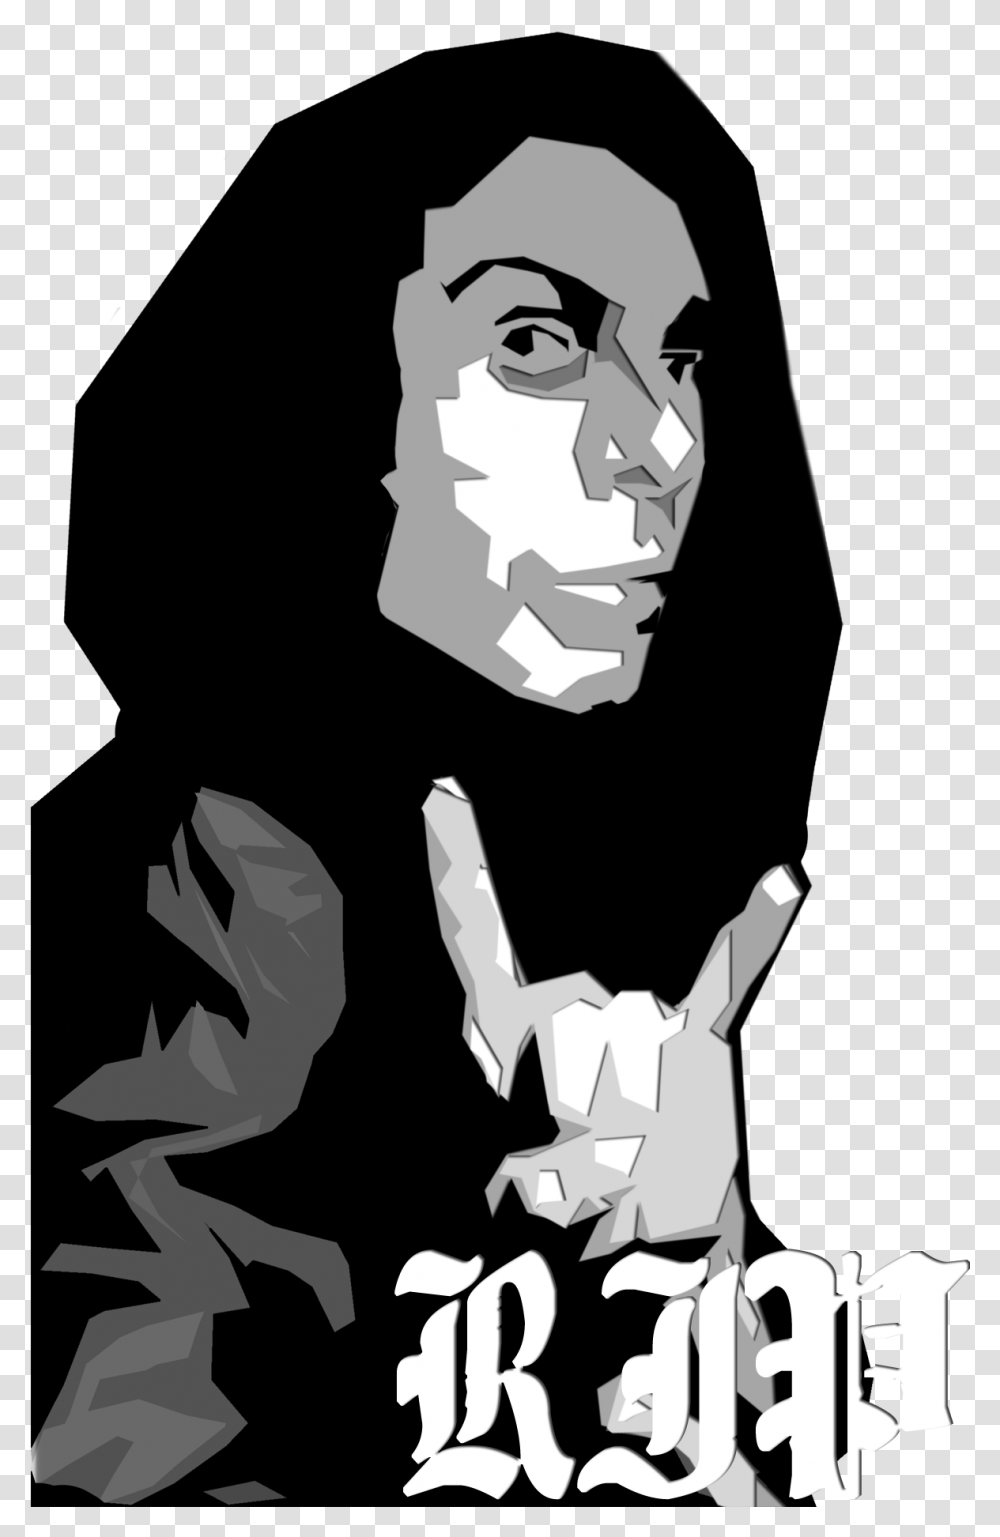 Rip Ronnie James Dio Illustration, Hand, Stencil, Portrait Transparent Png